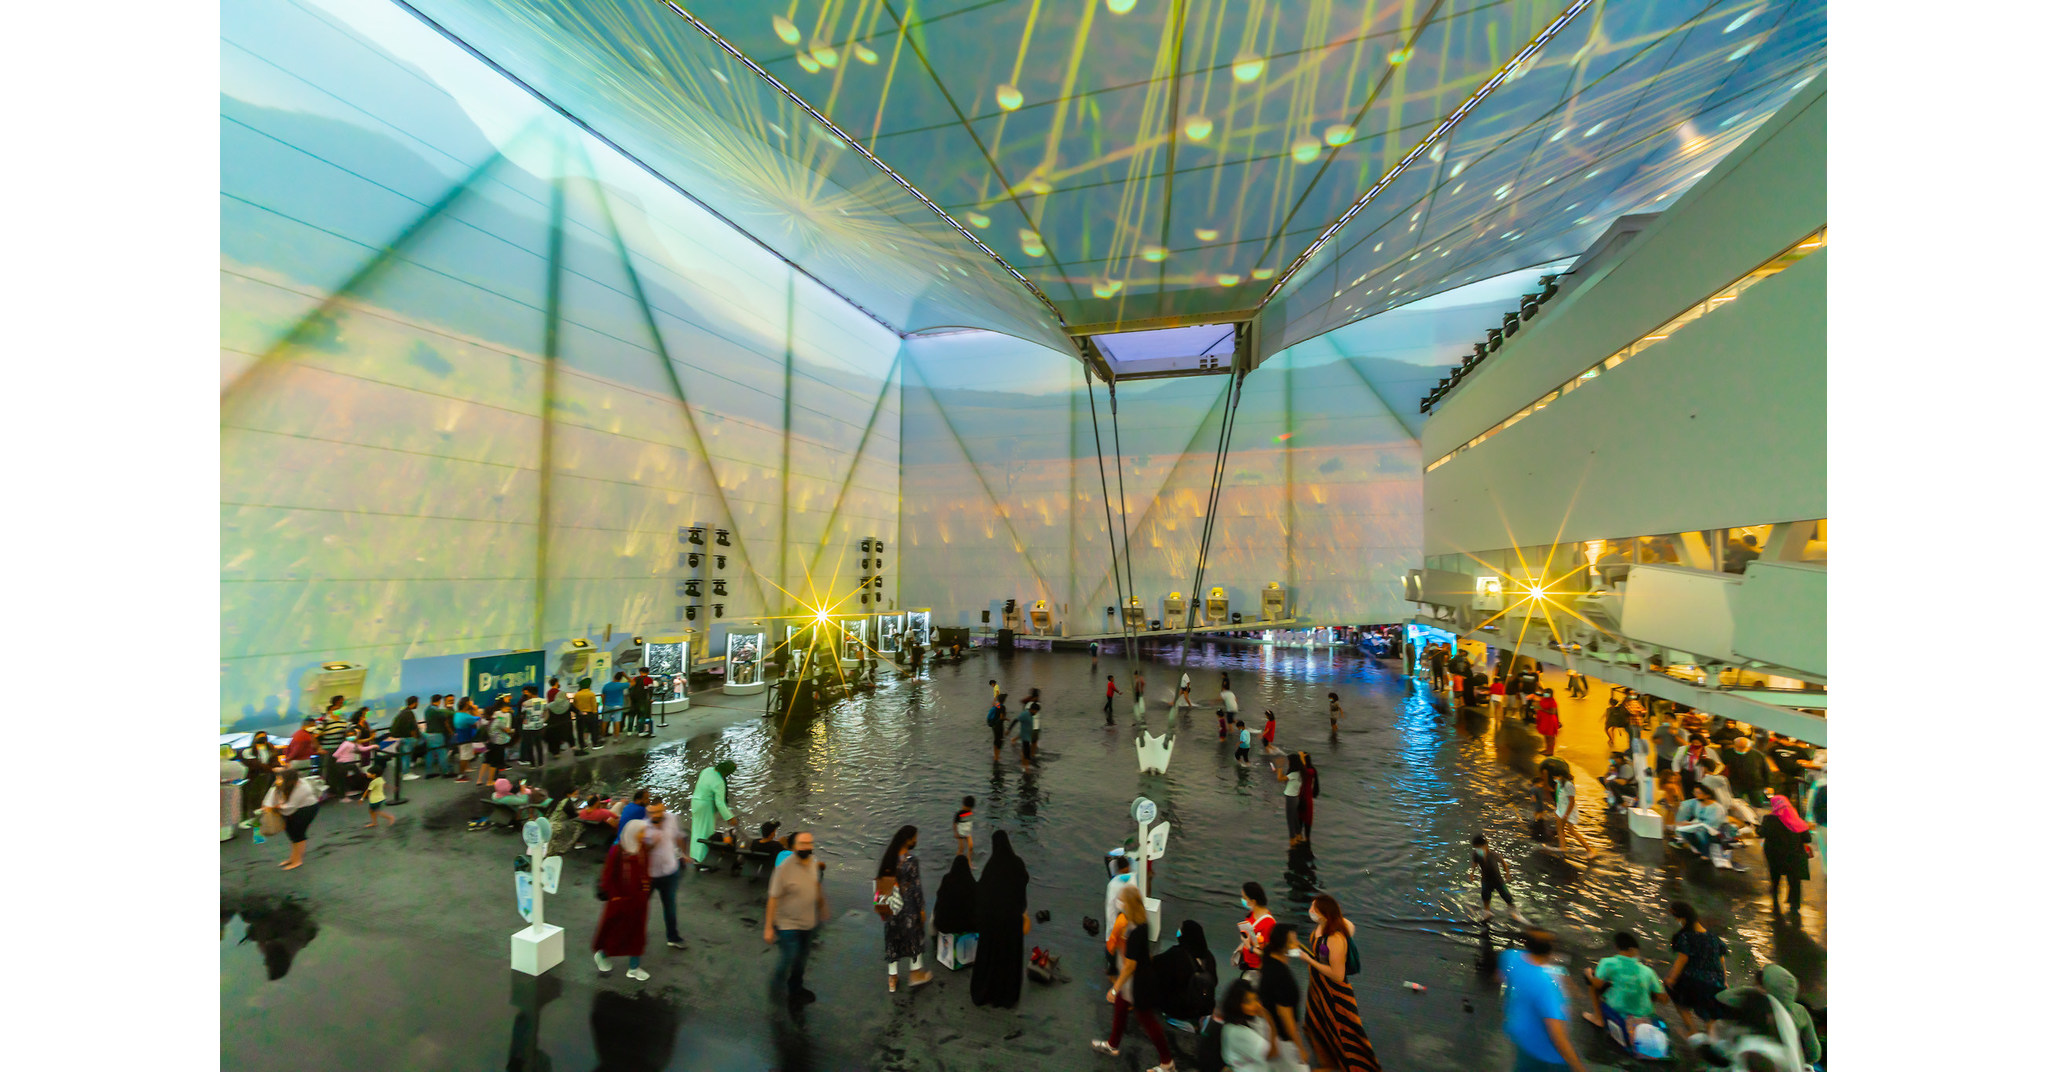 Exhibiendo el cuidado del agua, el Pabellón de Brasil llega a 2 millones de visitantes en Expo Dubai